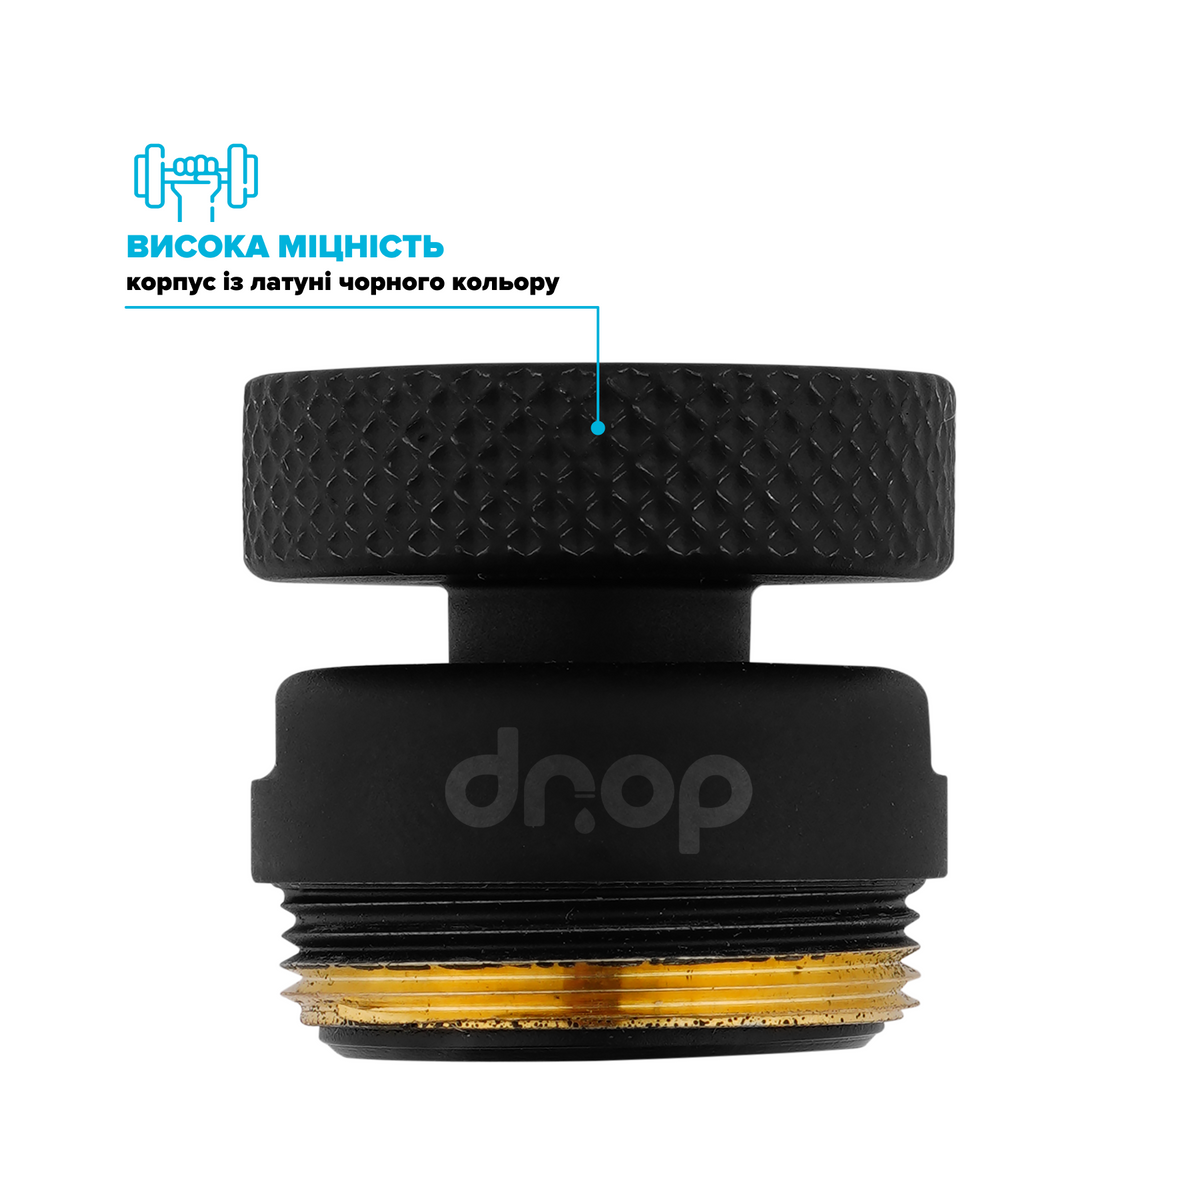 Поворотный 360° адаптер DROP СOLOR CL360F-BL внутренняя резьба 22 мм угол 15° латунь цвет черный